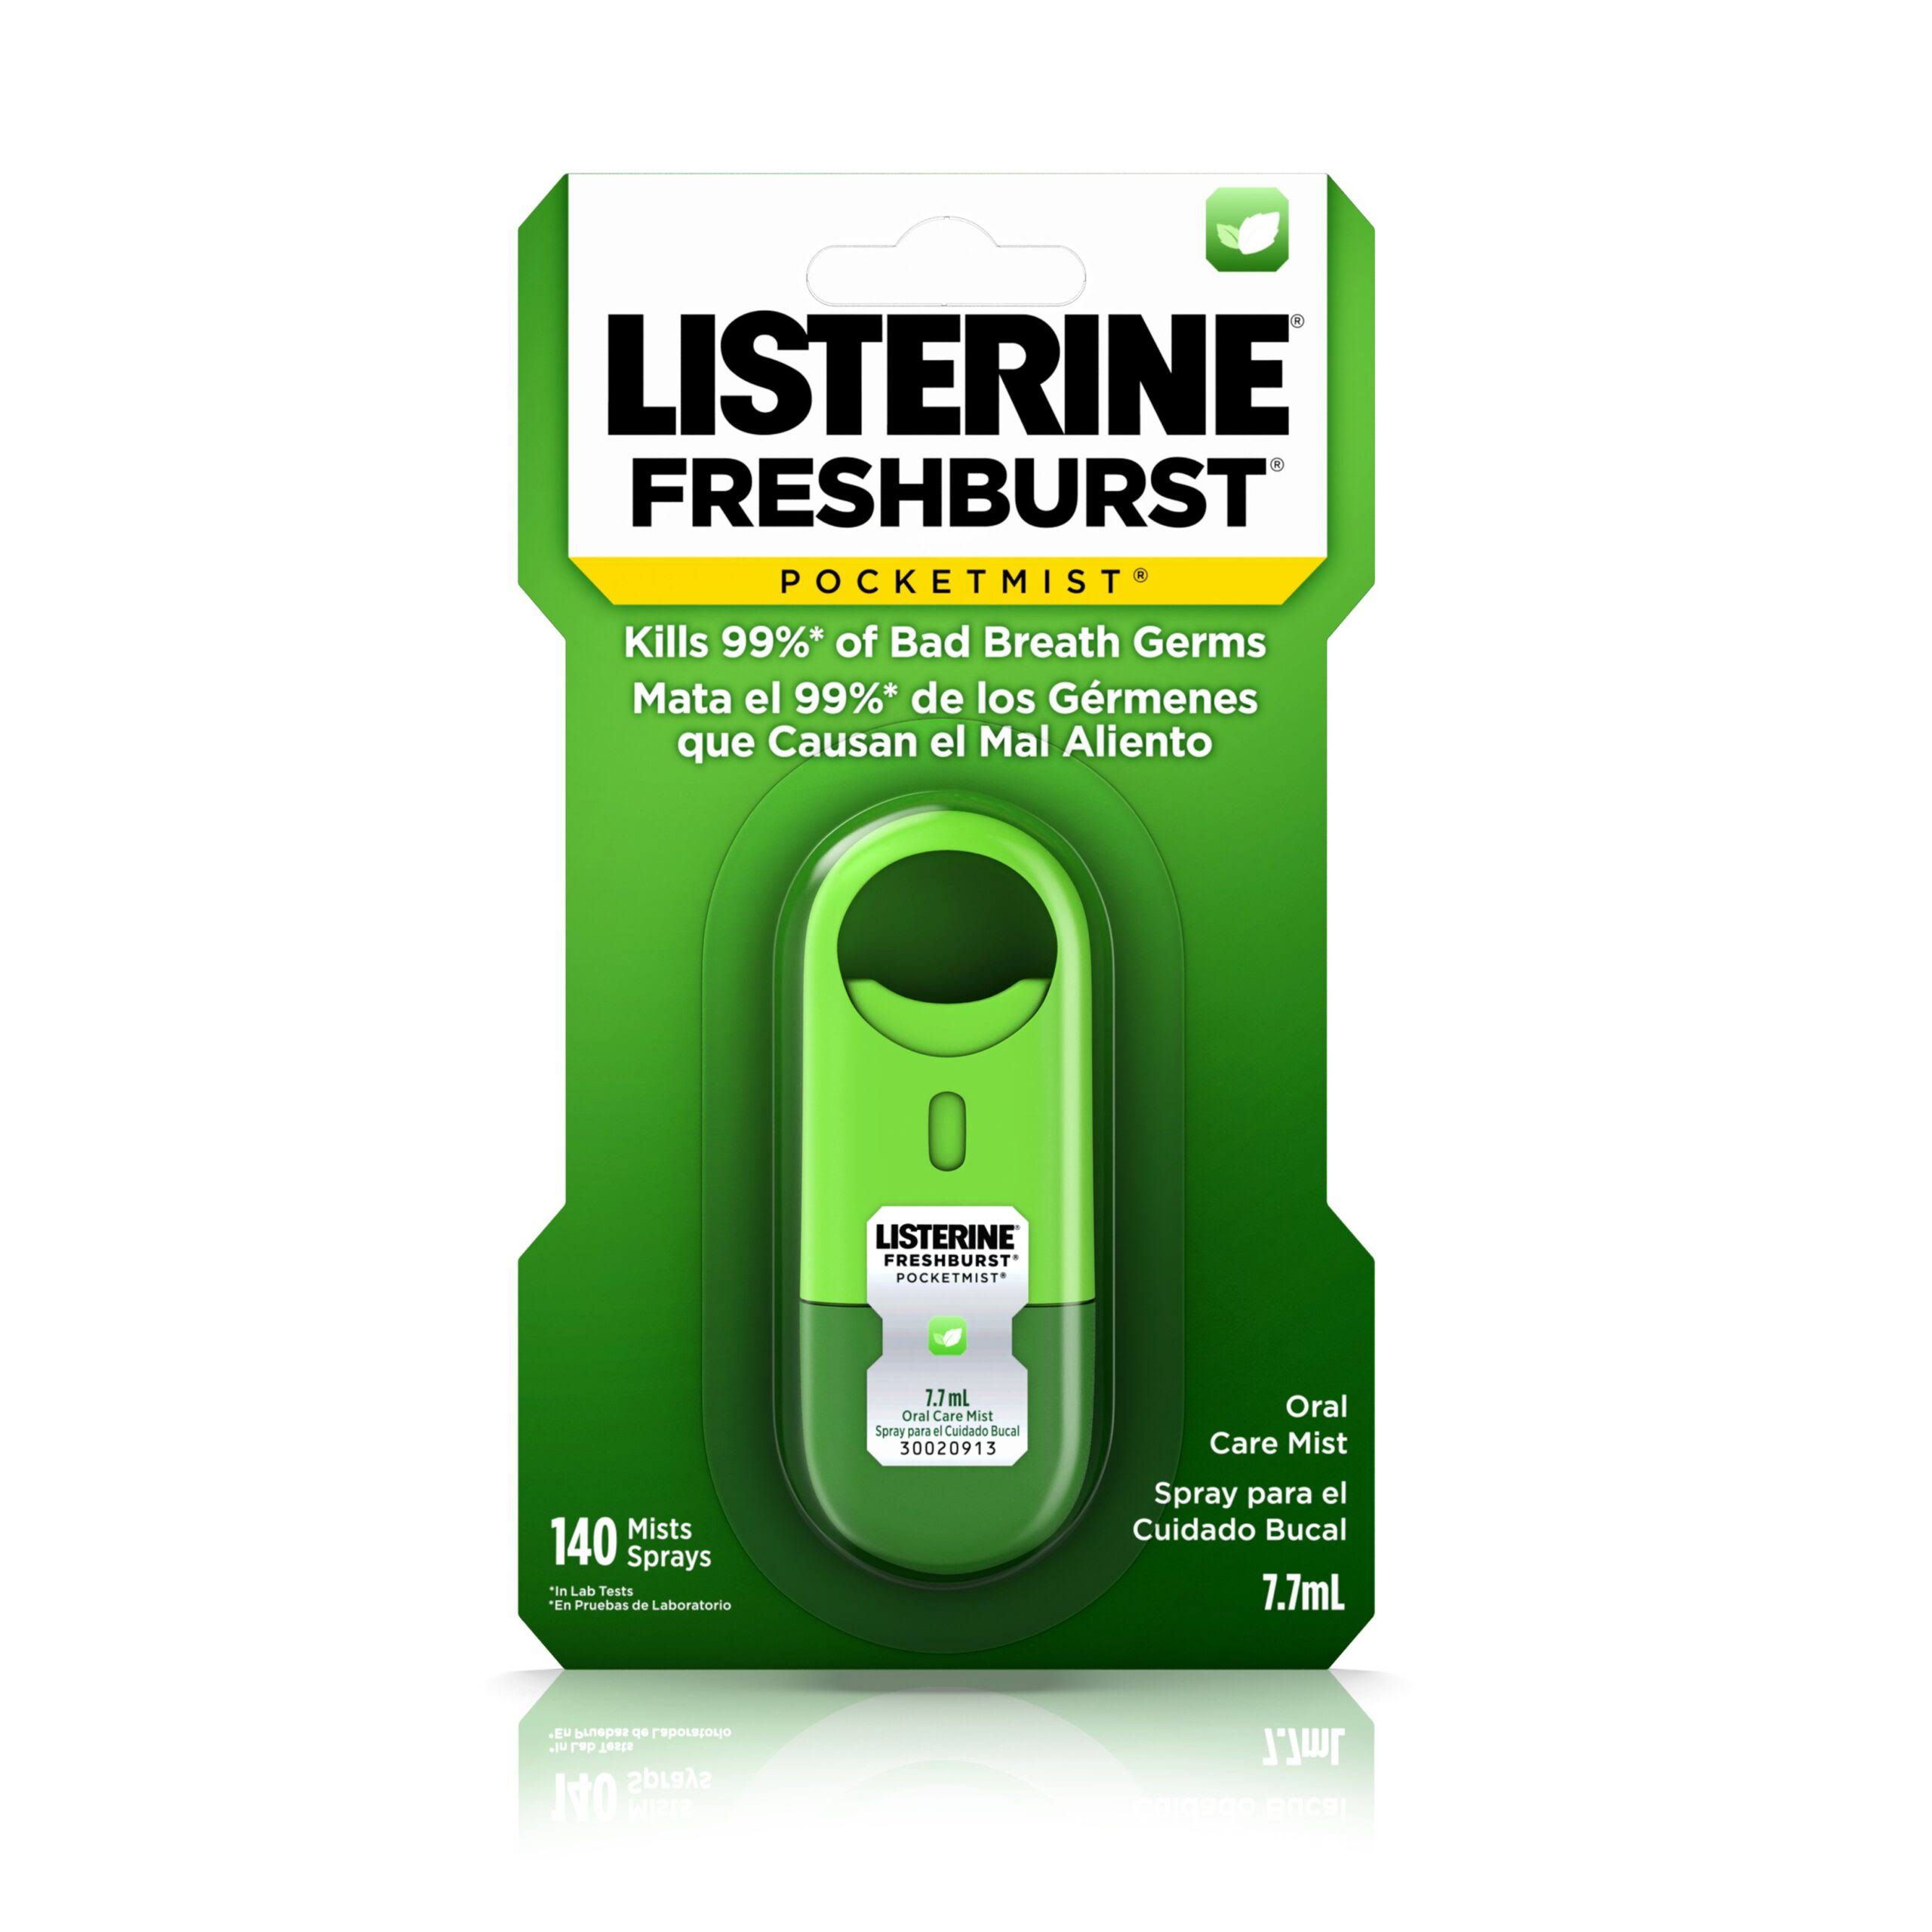 Listerine Pocket Mist Oral Care Mist - 140 Mint Sprays, 7.7ml